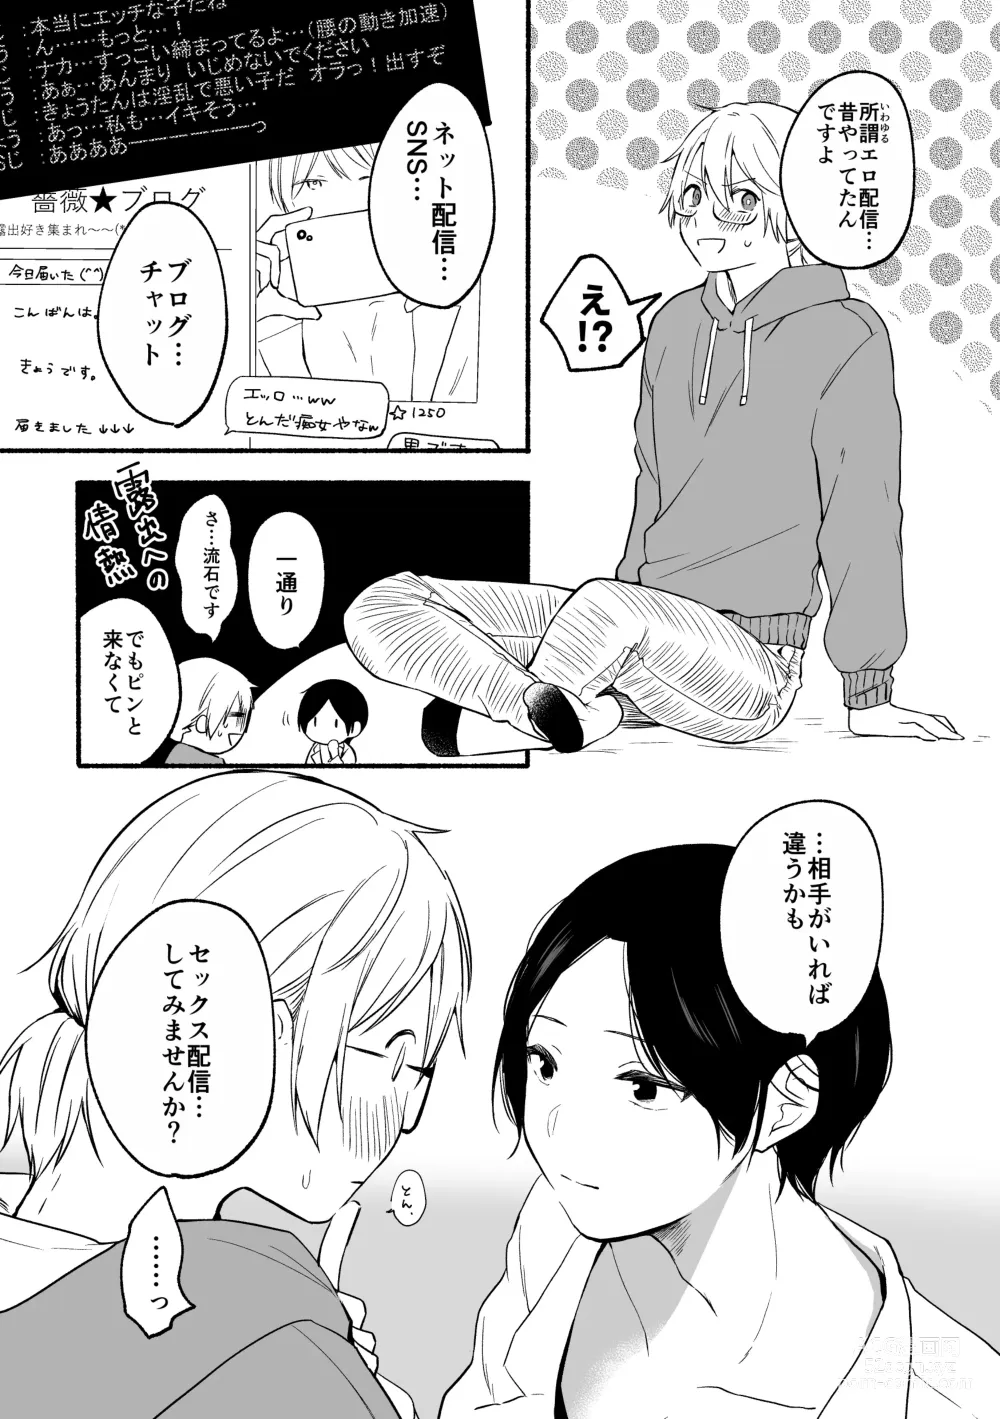 Page 5 of doujinshi Seijinkou Mangakka, Hamedori Haishin Ganbarimasu.